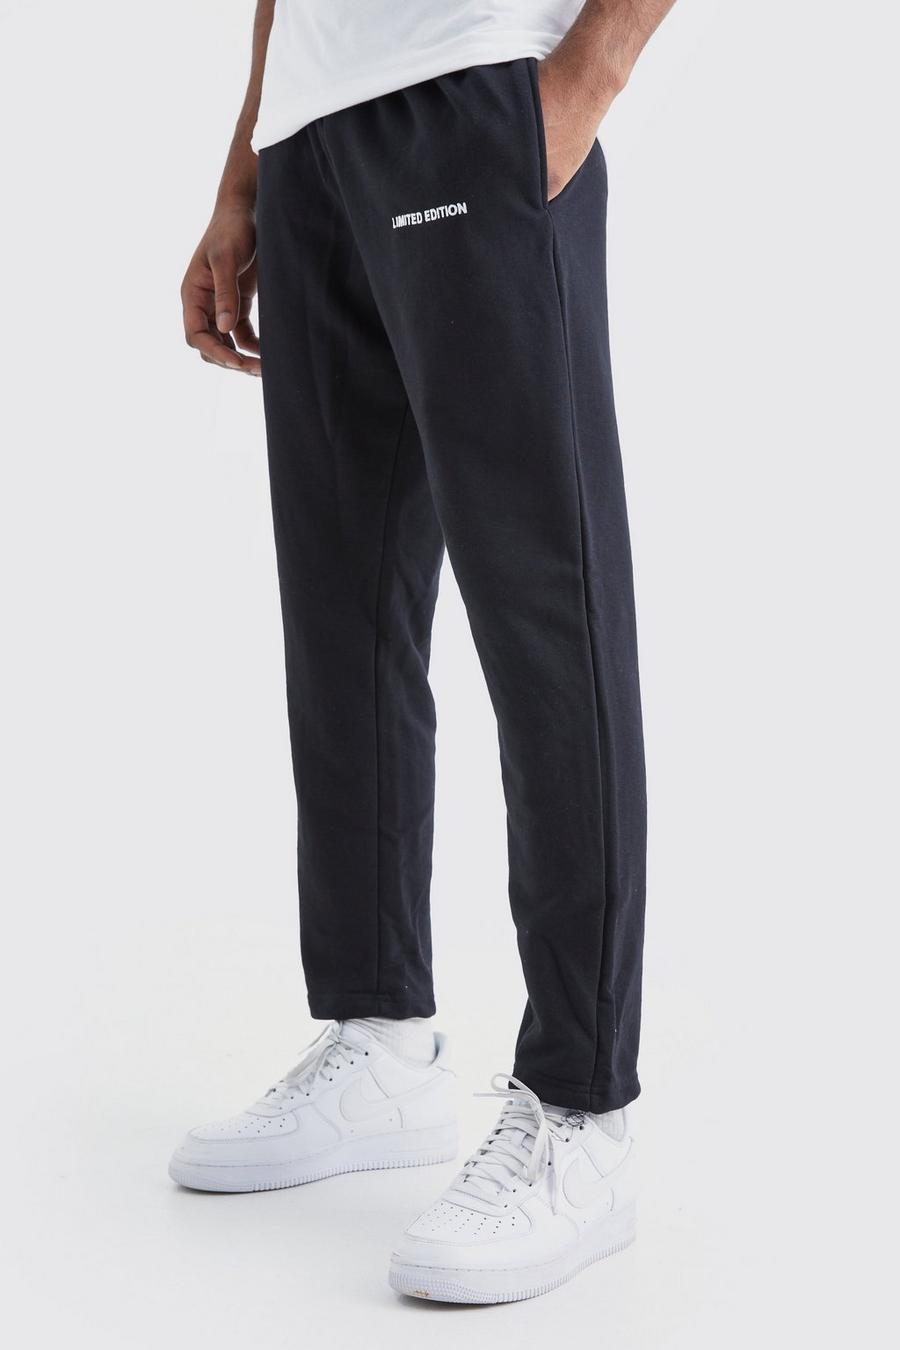 Pantalón deportivo Tall ajustado grueso, Black image number 1